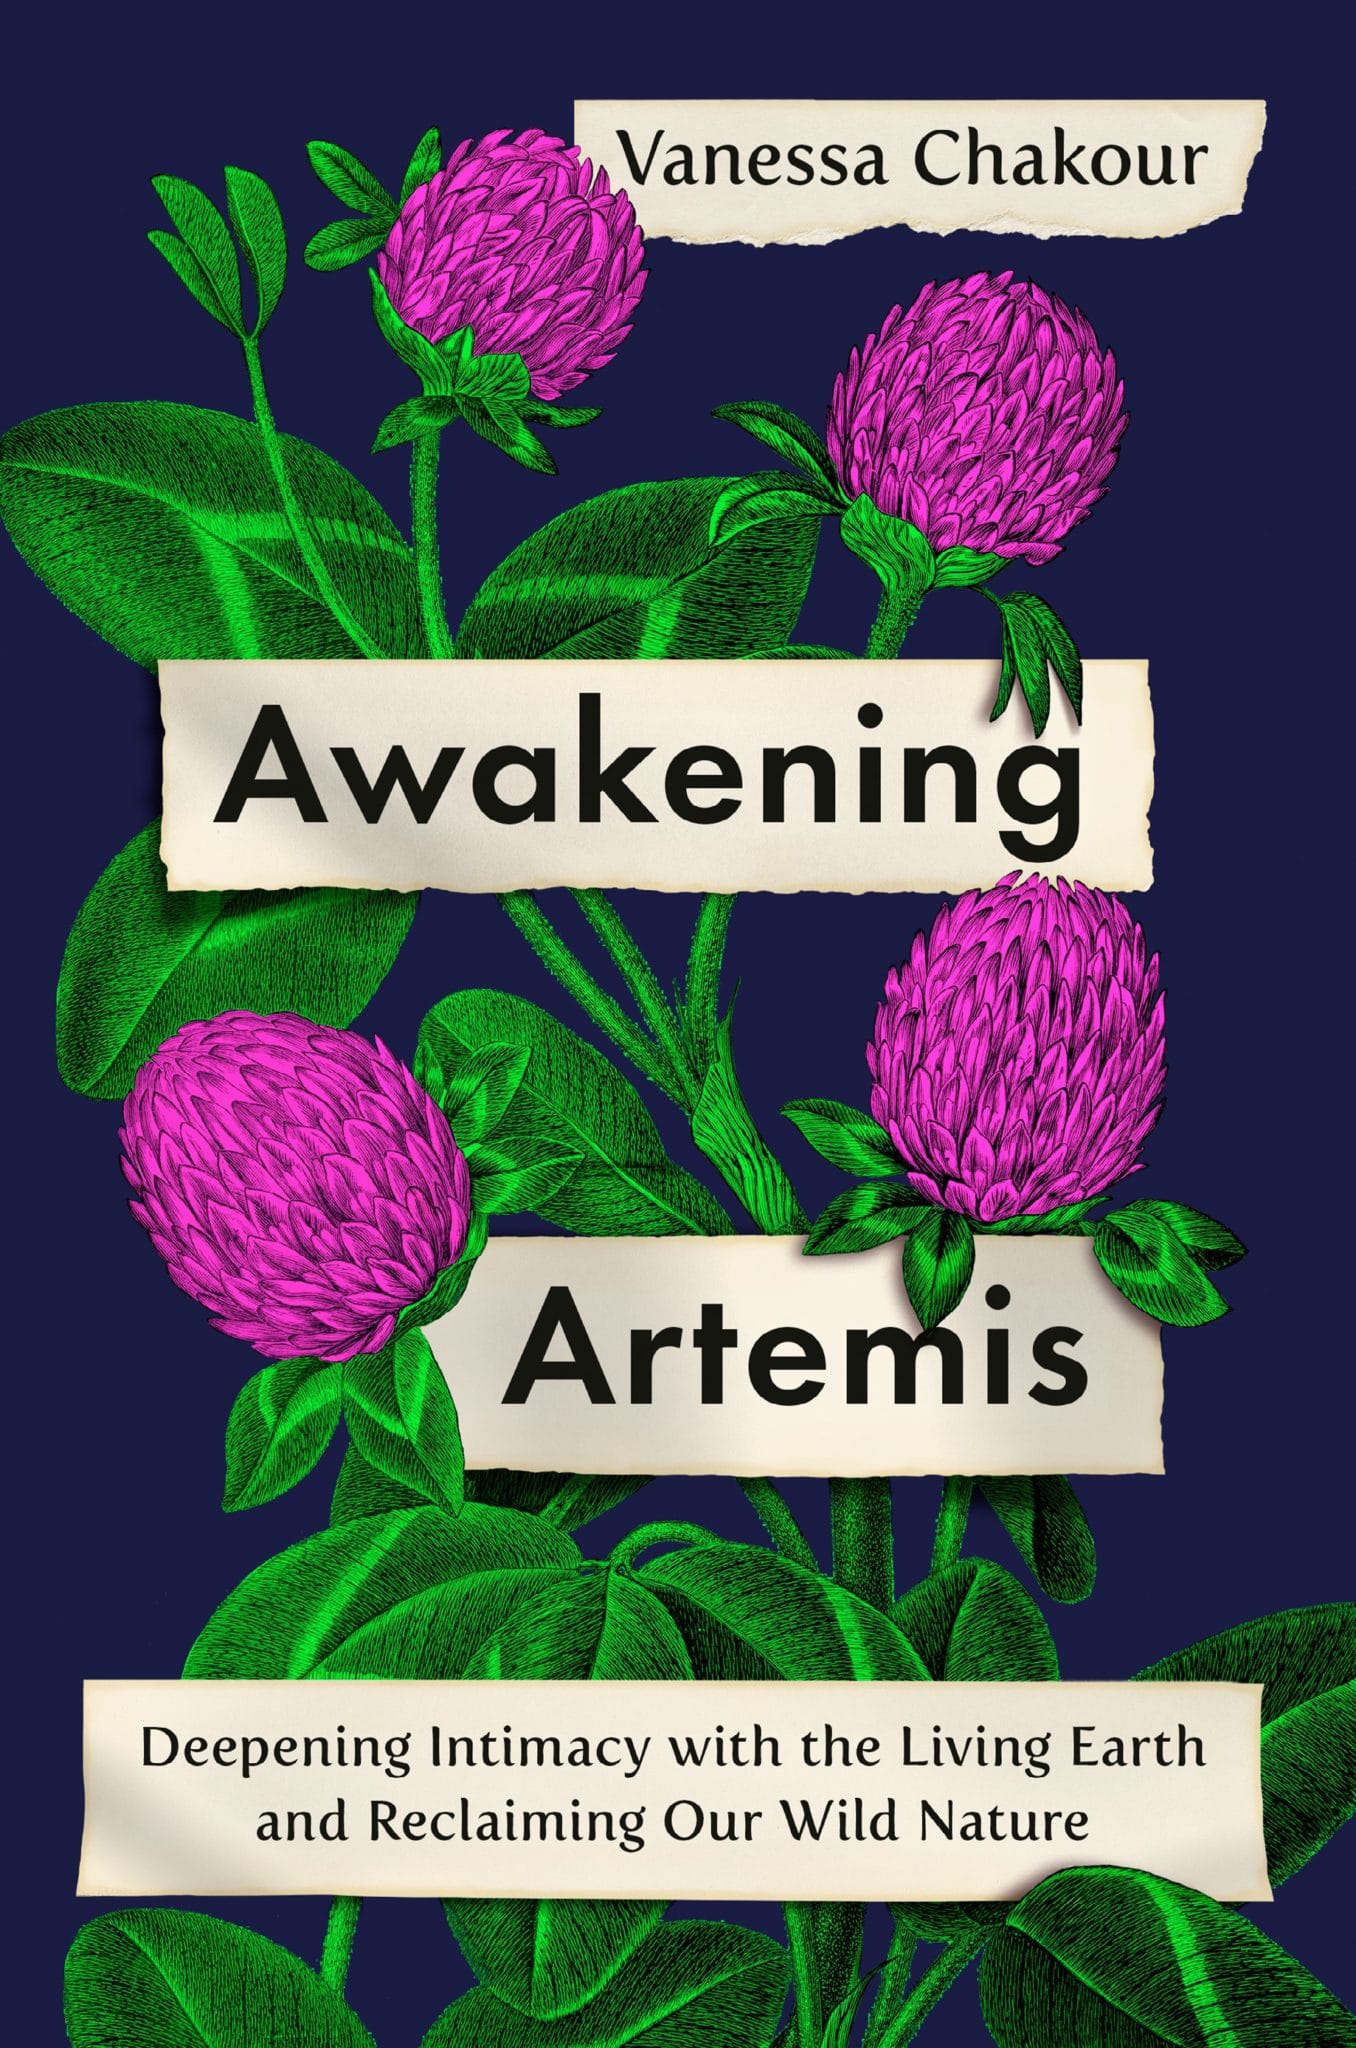 Vanessa Awakening Artemis